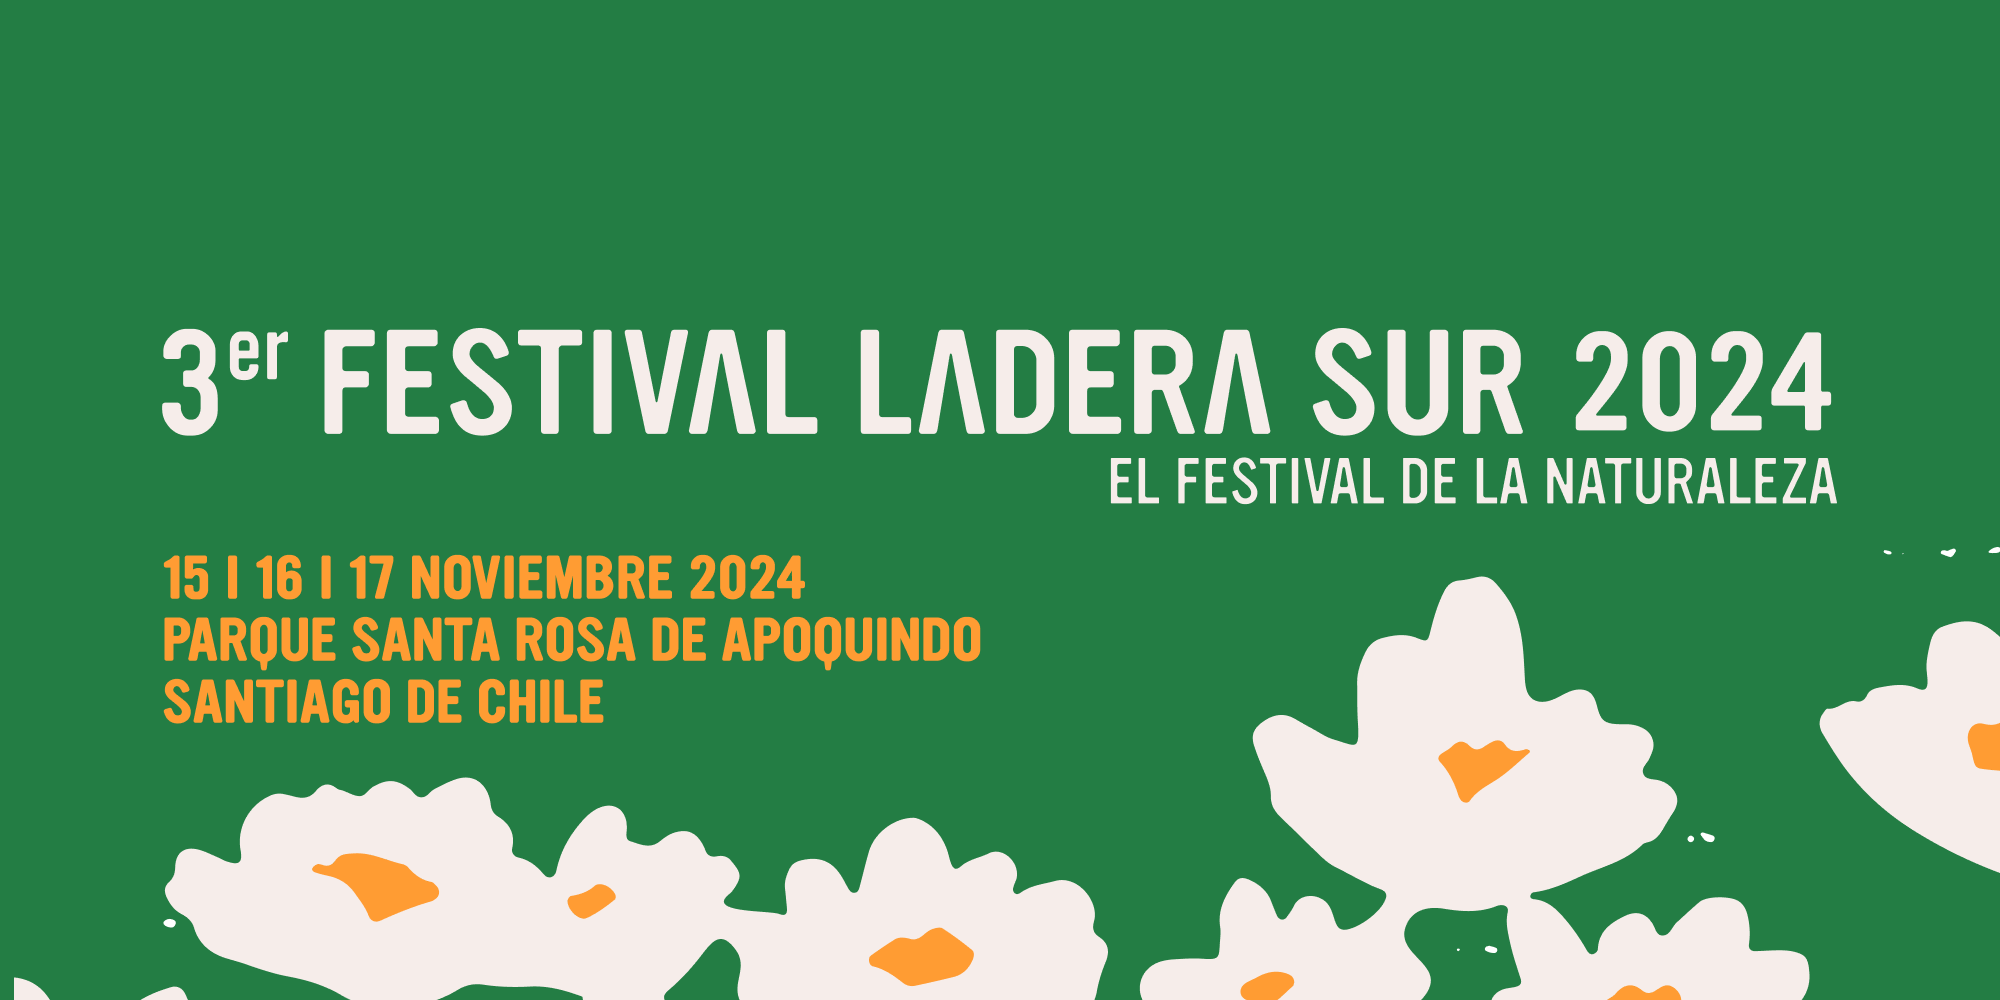 ¡Llena el formulario! A las 12 se abren las postulaciones al Festival Ladera Sur 2024